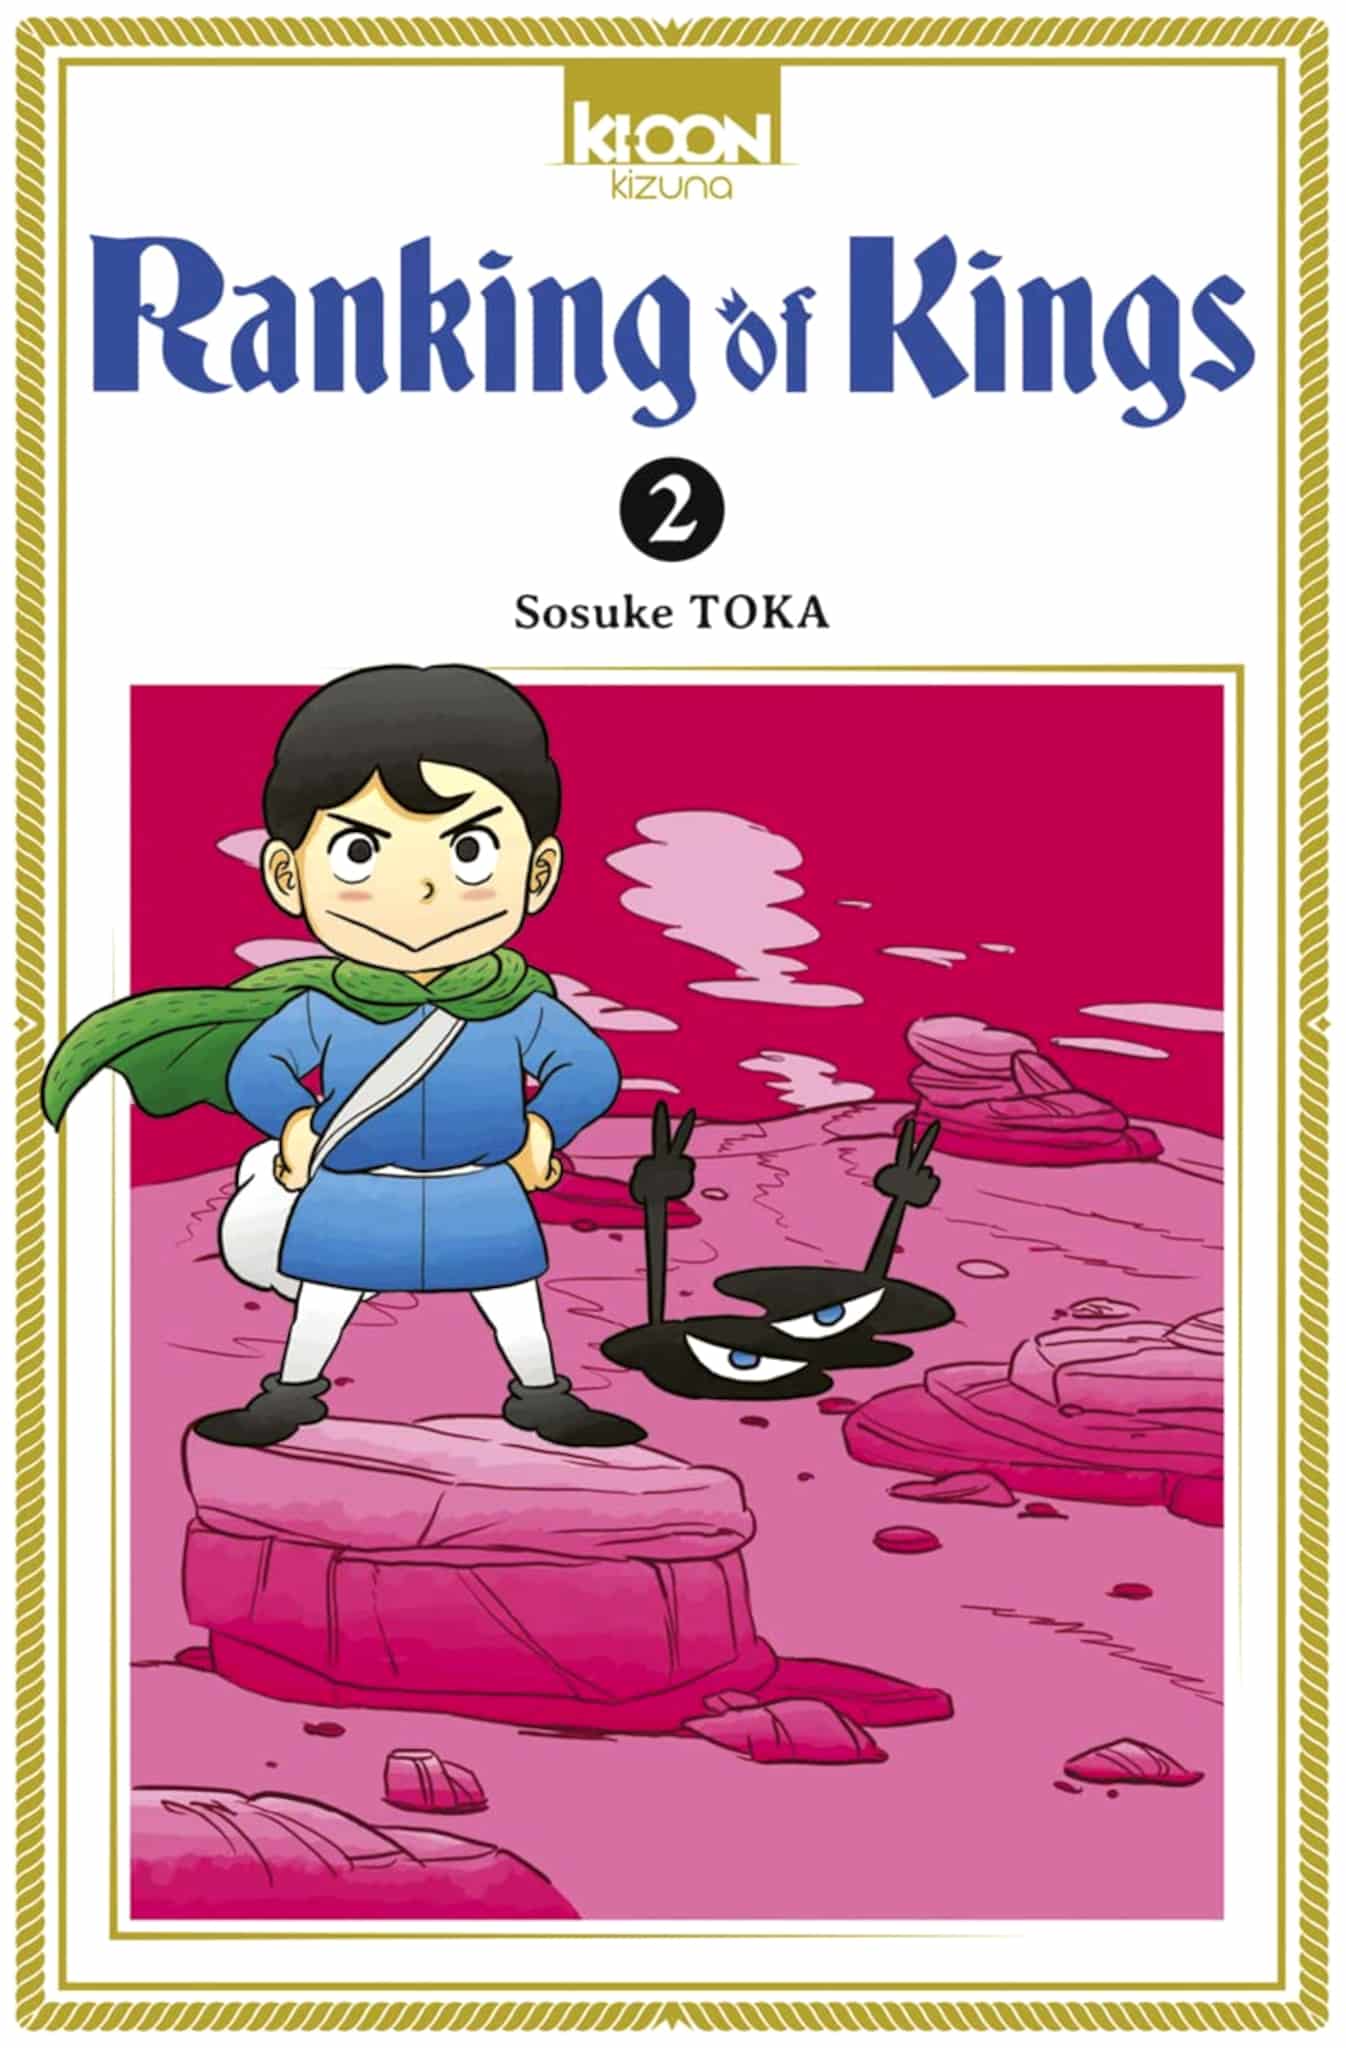 Tome 2 du manga Ranking of Kings